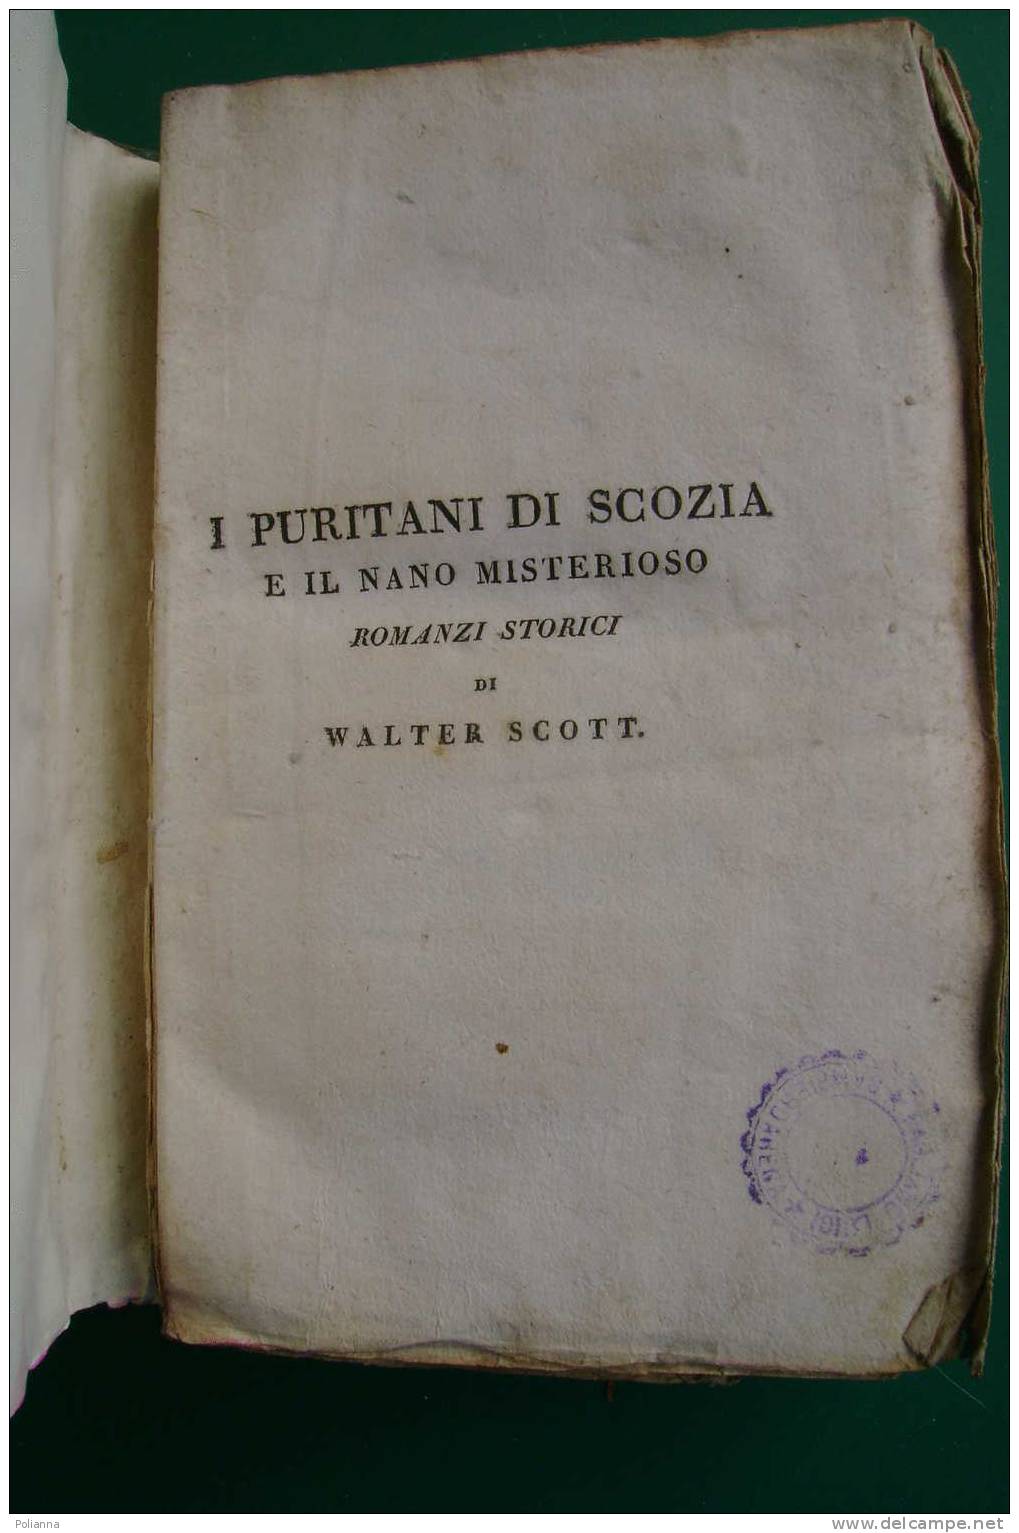 PDE/55 W.Scott I PURITANI DI SCOZIA E IL NANO MISTERIOSO Tomo III - Tipografia Di Commercio 1822 - Antiguos